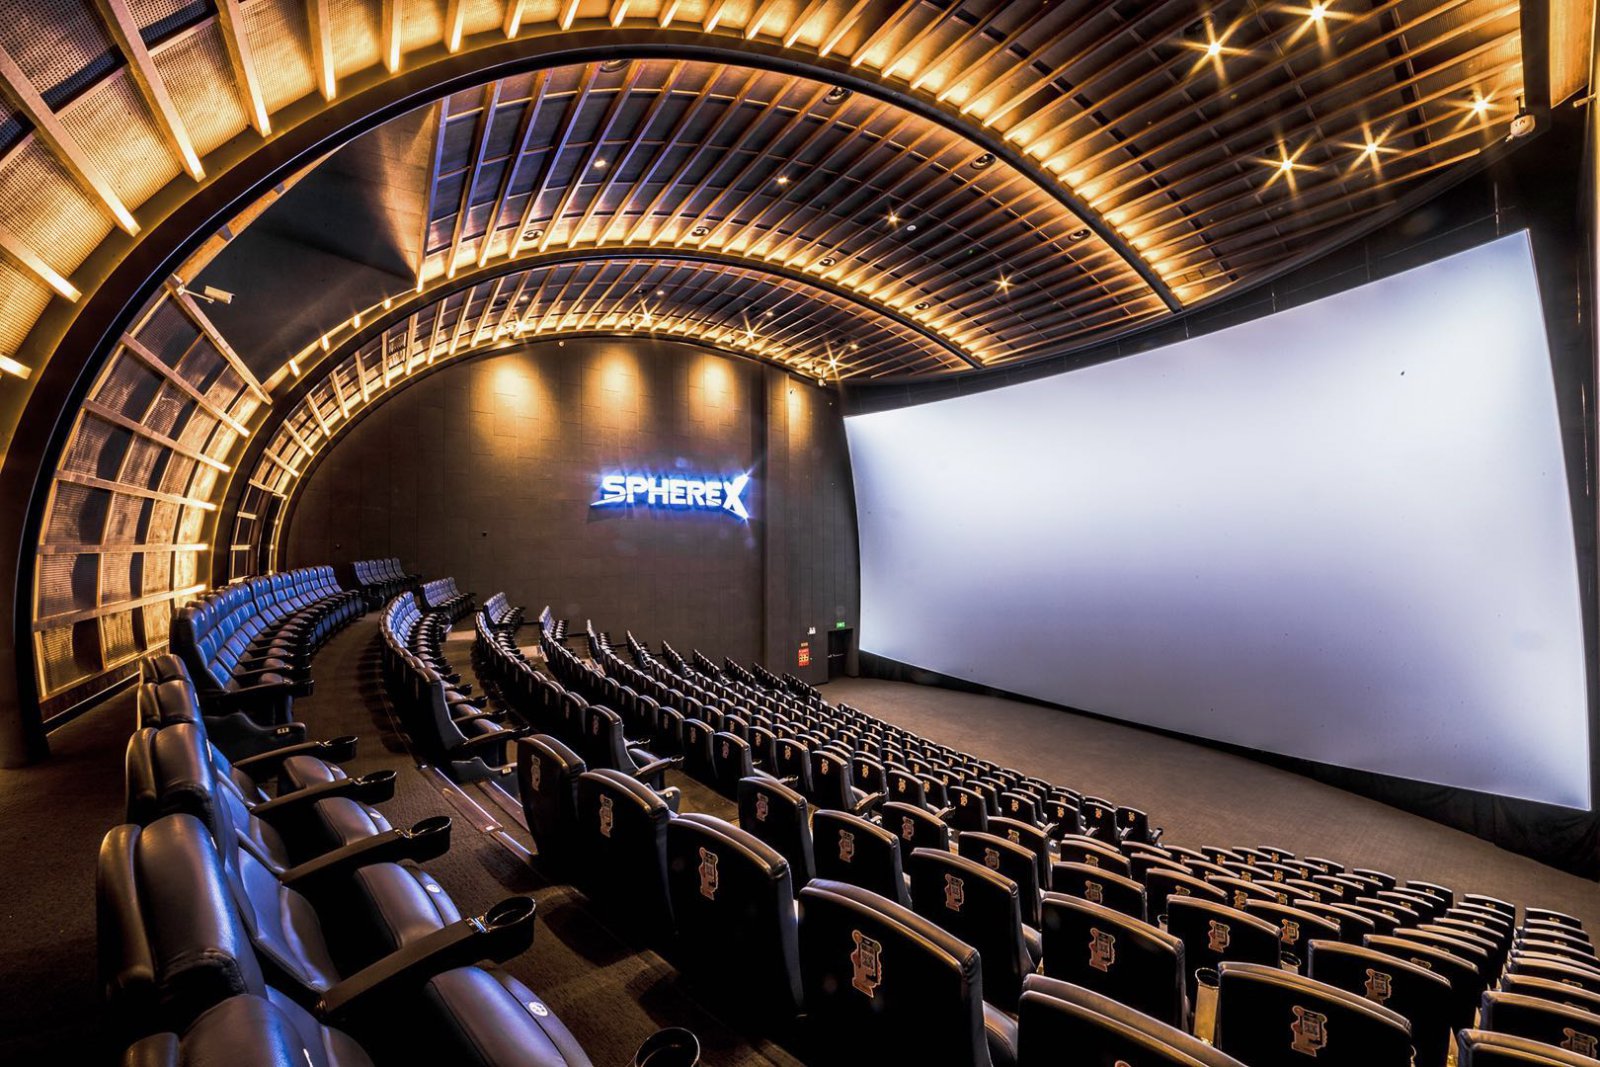 7910平方米电影院cgv星聚汇杭州龙湖店设计,带给大家的超越电影的